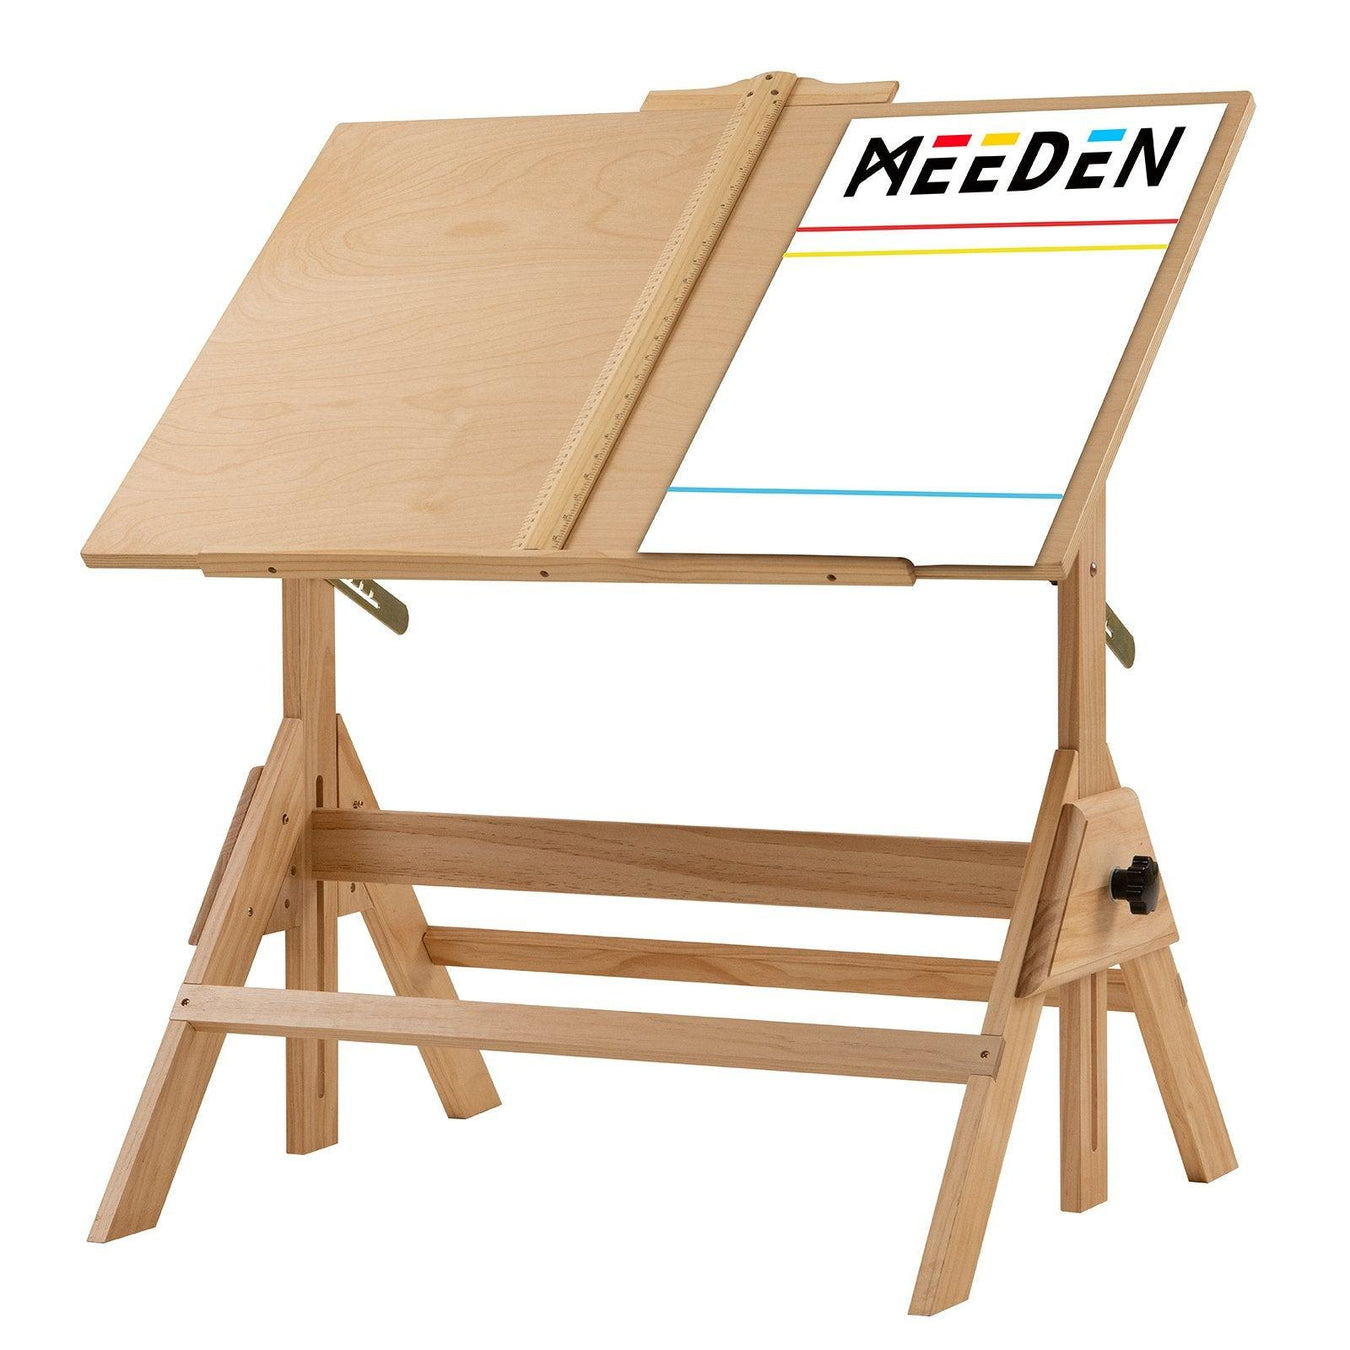 Drafting Table - MEEDEN ART